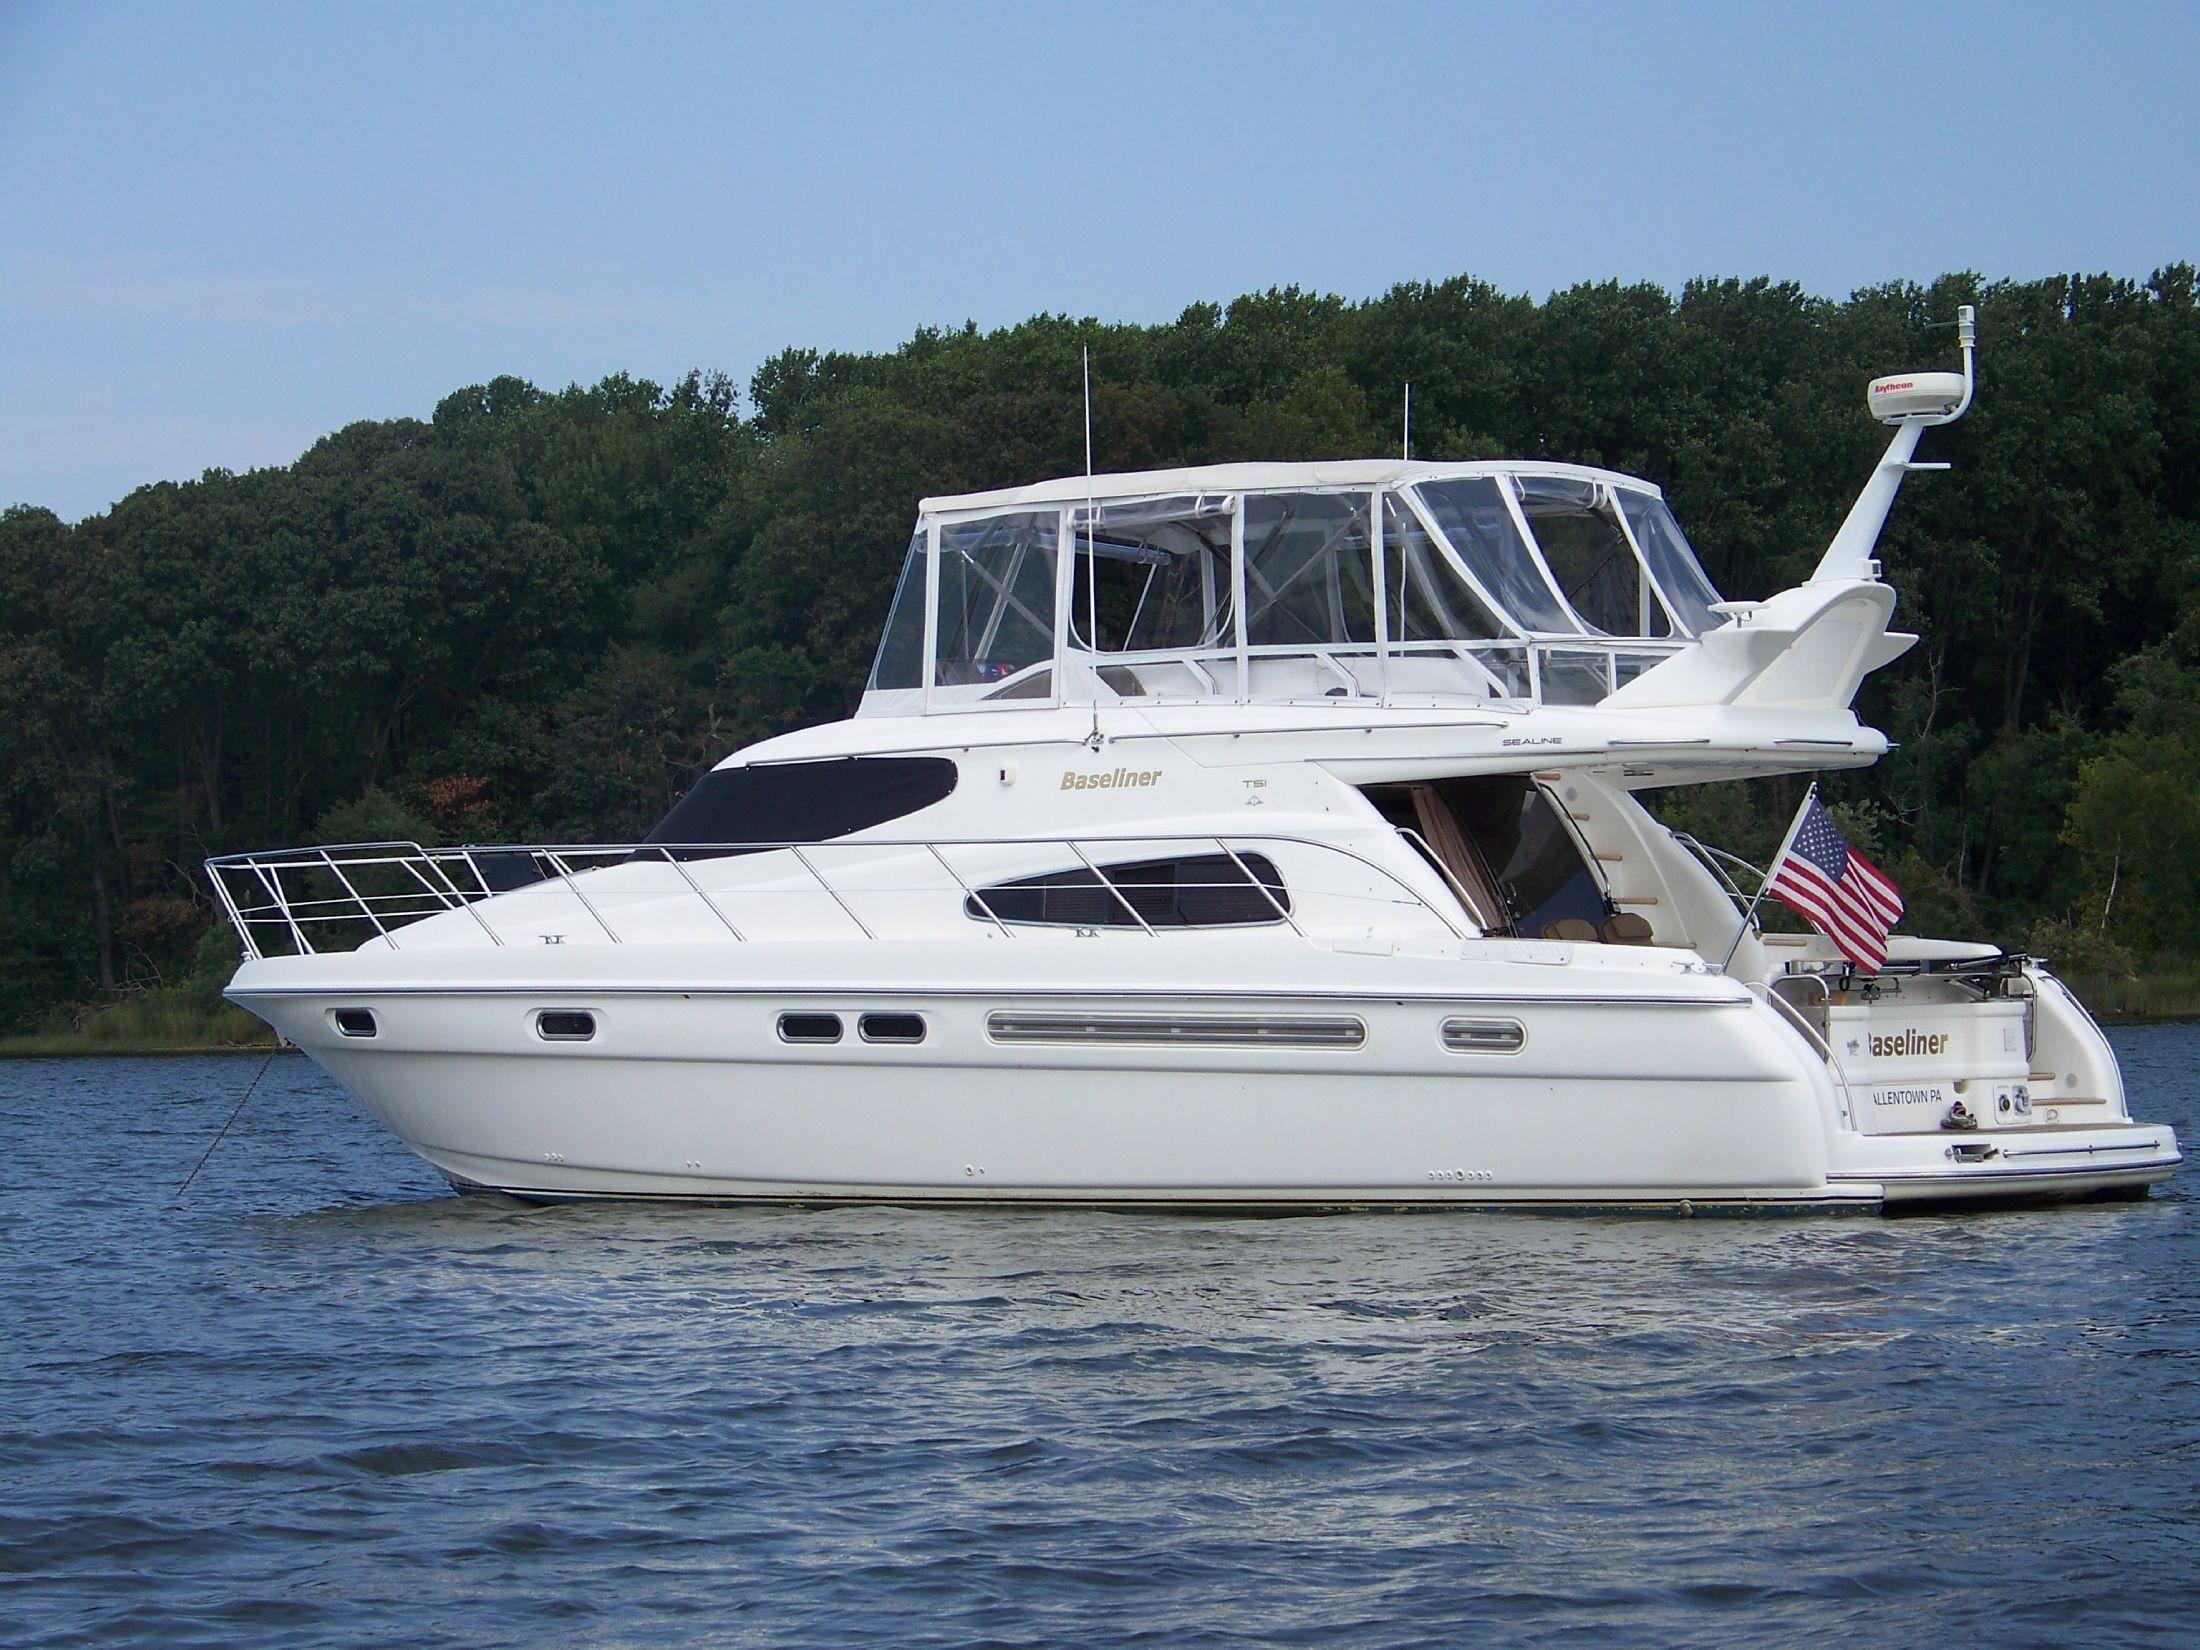 Sealine T51 Motor Yacht, Chesapeake City